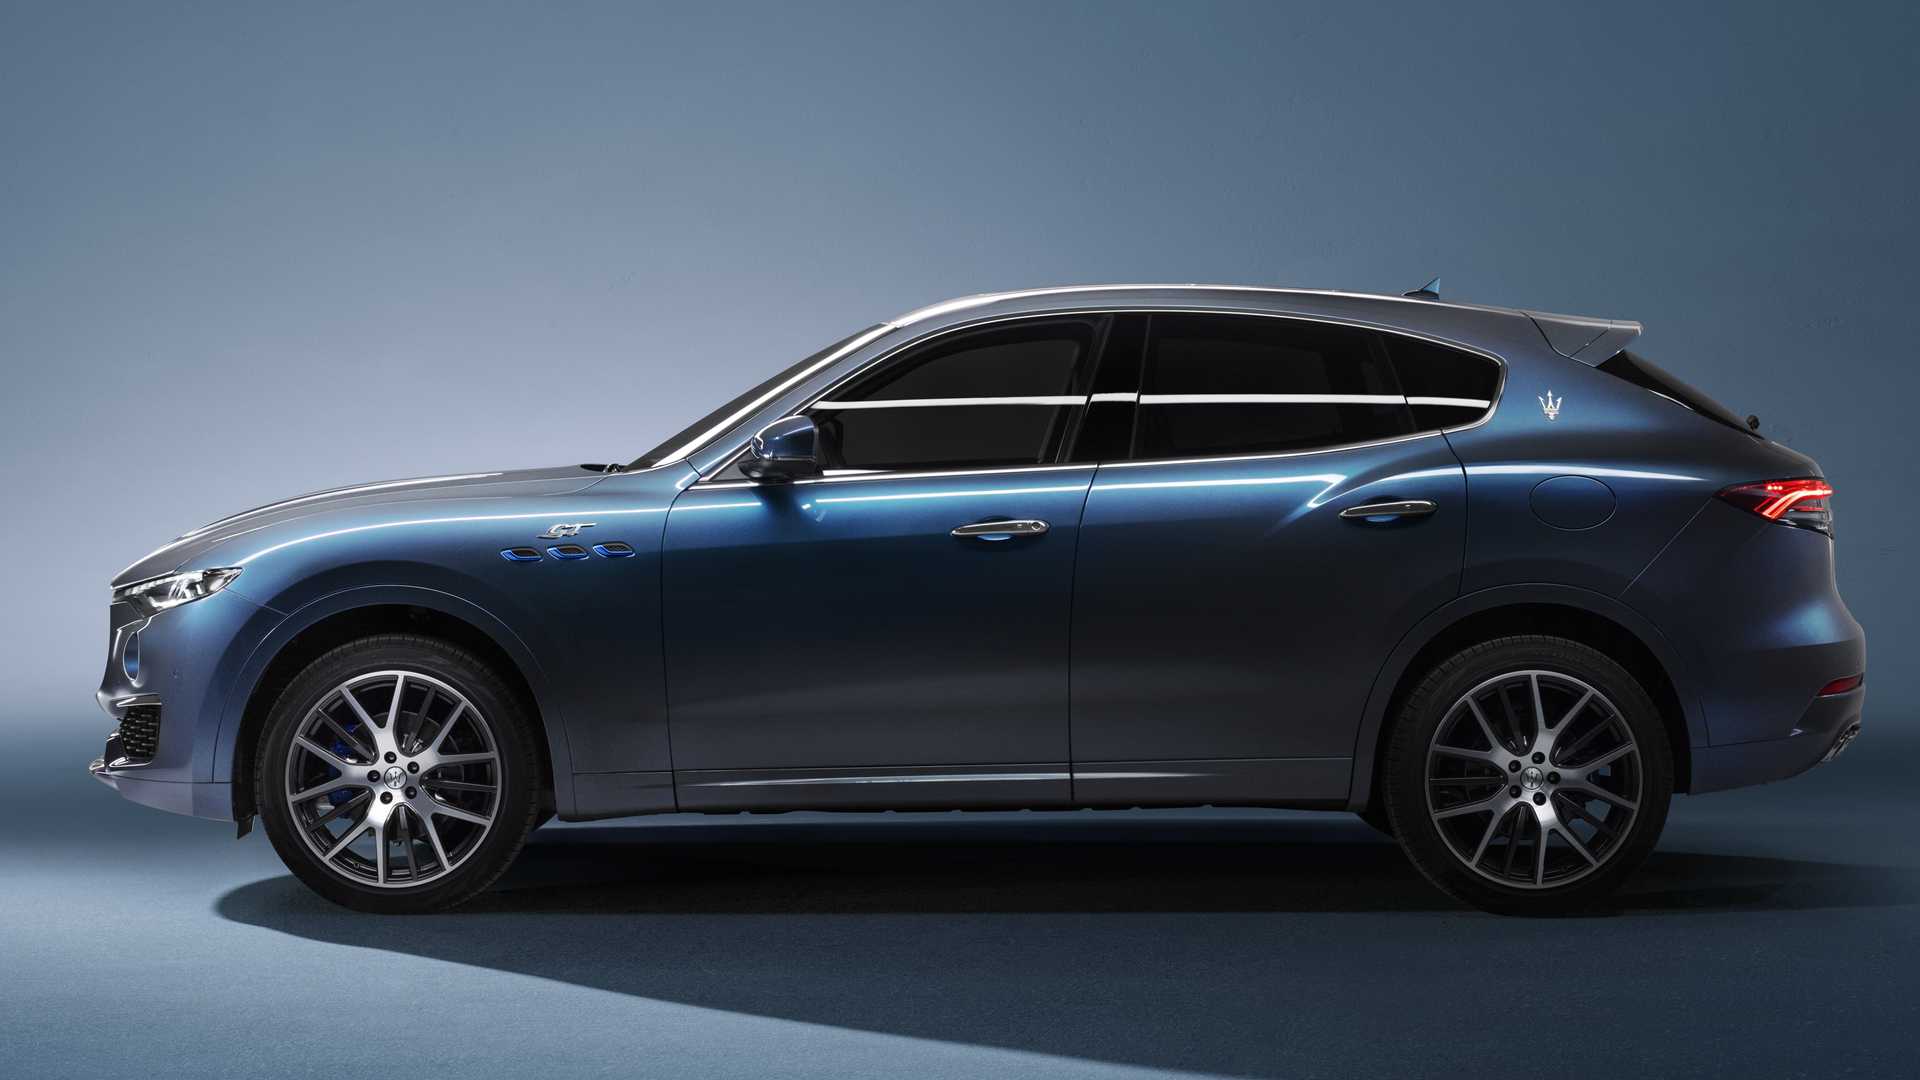 نمای جانبی شاسی بلند مازراتی لوانته هیبرید / Maserati Levante Hybrid SUV آبی رنگ